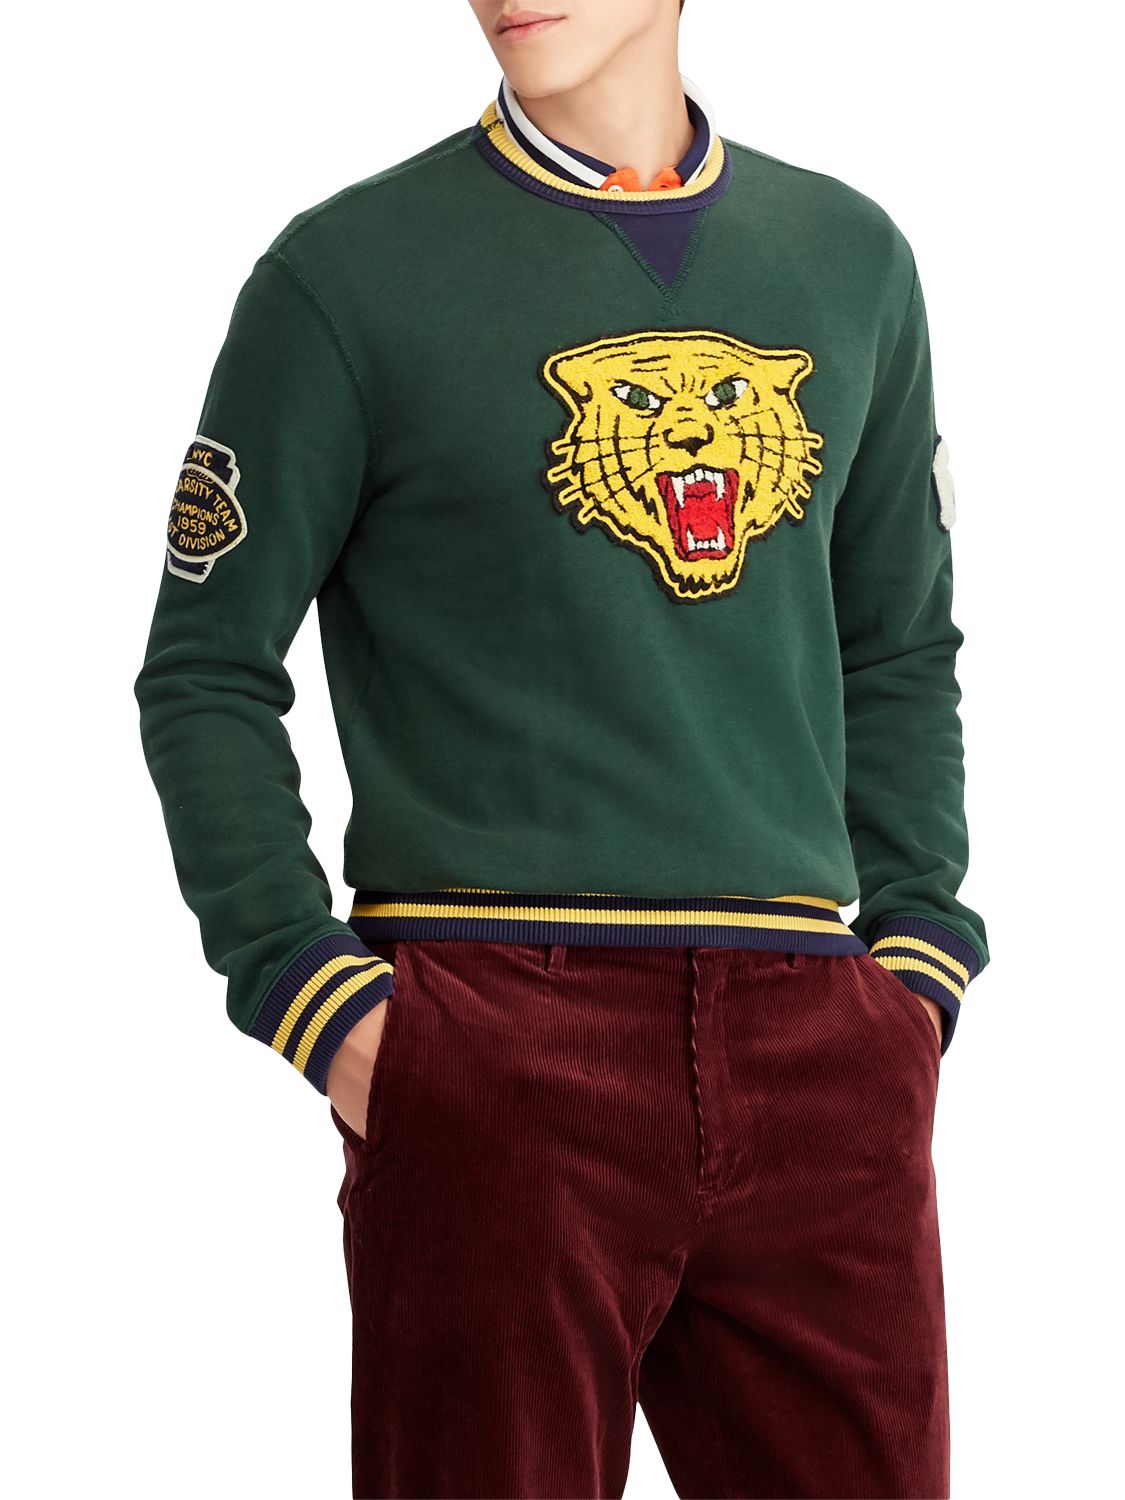 polo ralph lauren tiger sweatshirt